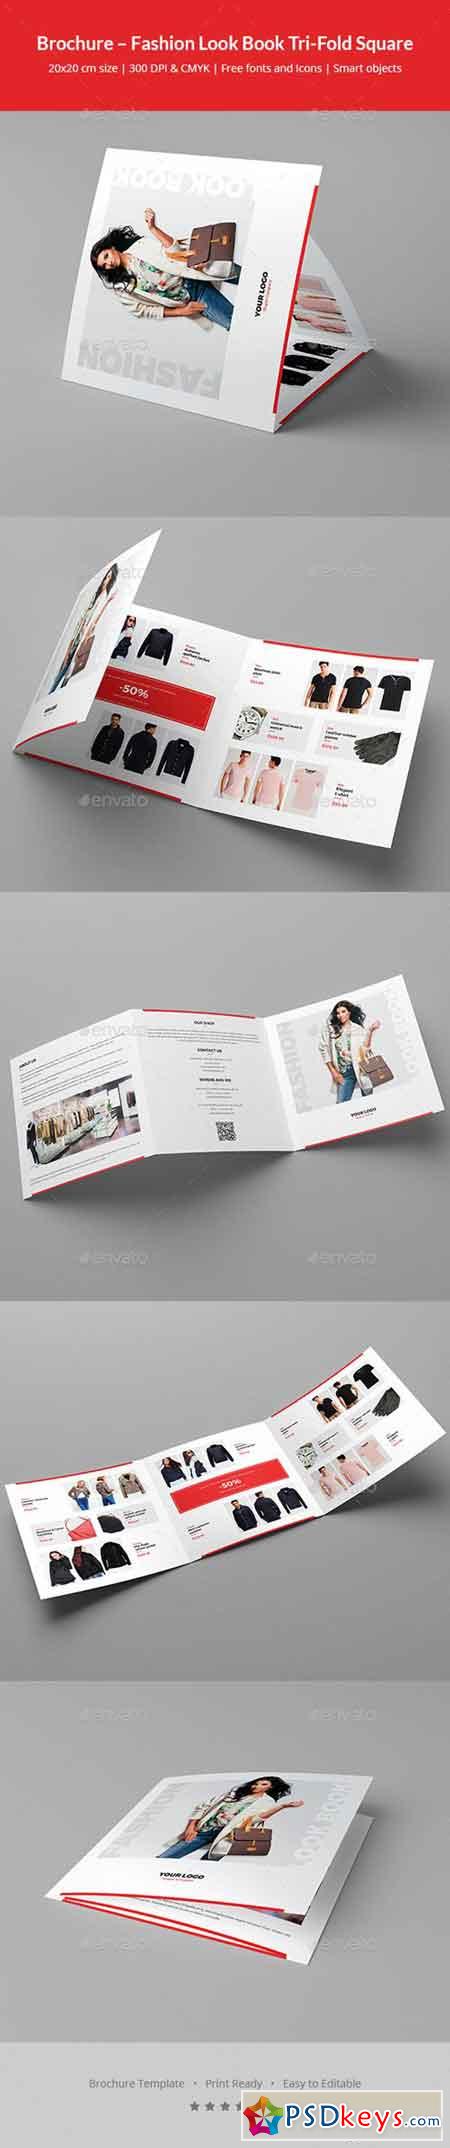 Brochure  Fashion Look Book Tri-Fold Square 20916941